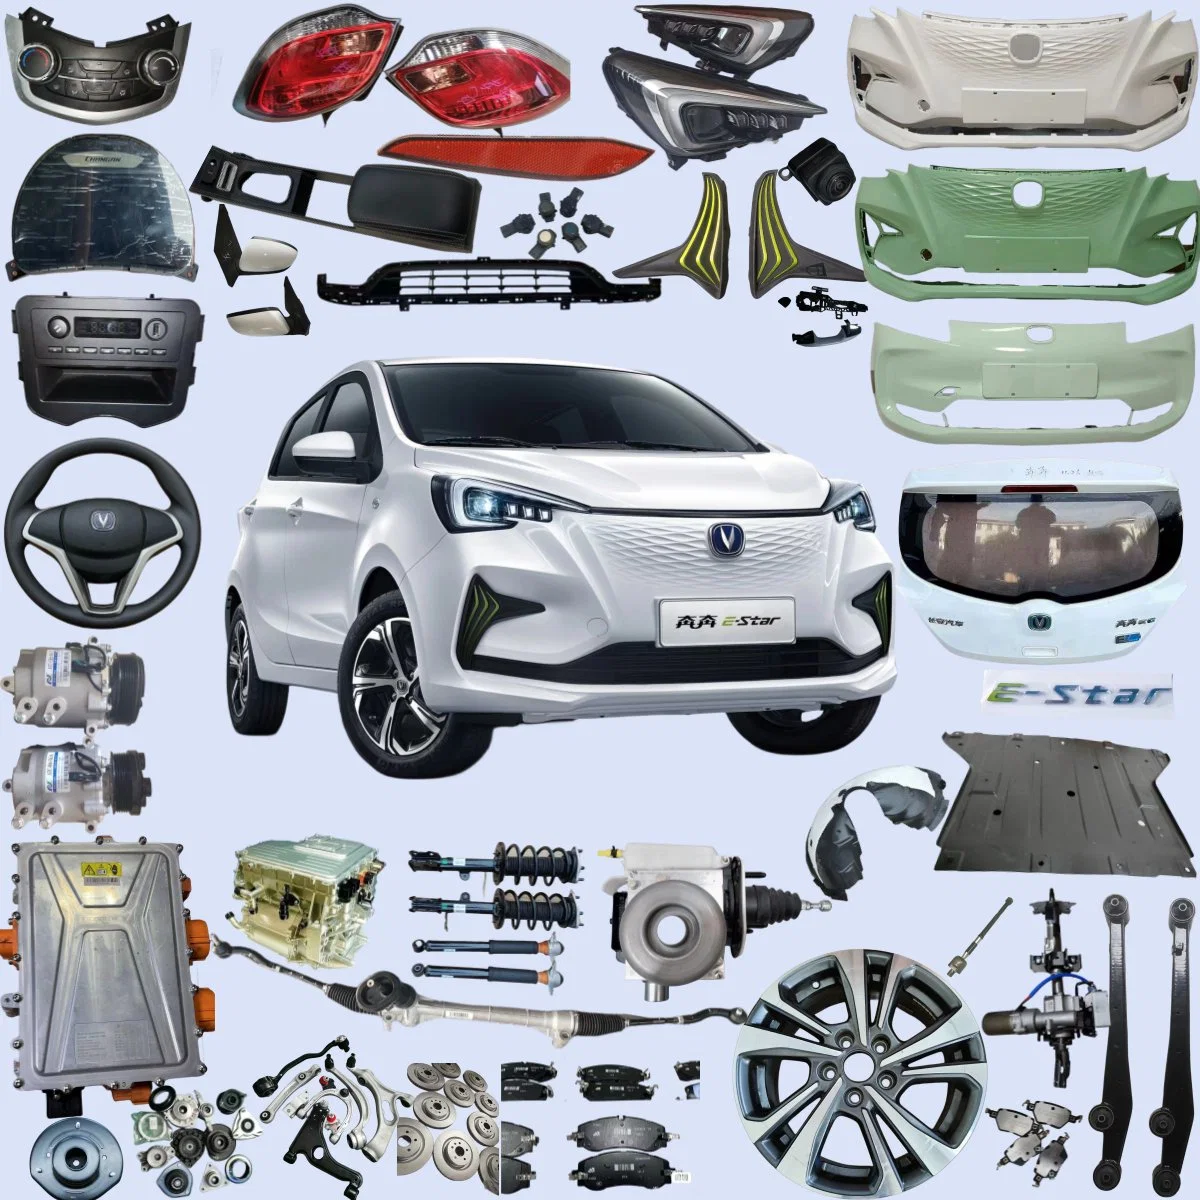 Accessoires pour voiture E-Star Changan Kit de corps de filtre à air pare-chocs avant/arrière Jante en alliage suspension amortisseur lampe d'origine auto/roue de secours Pièces plaquettes de frein